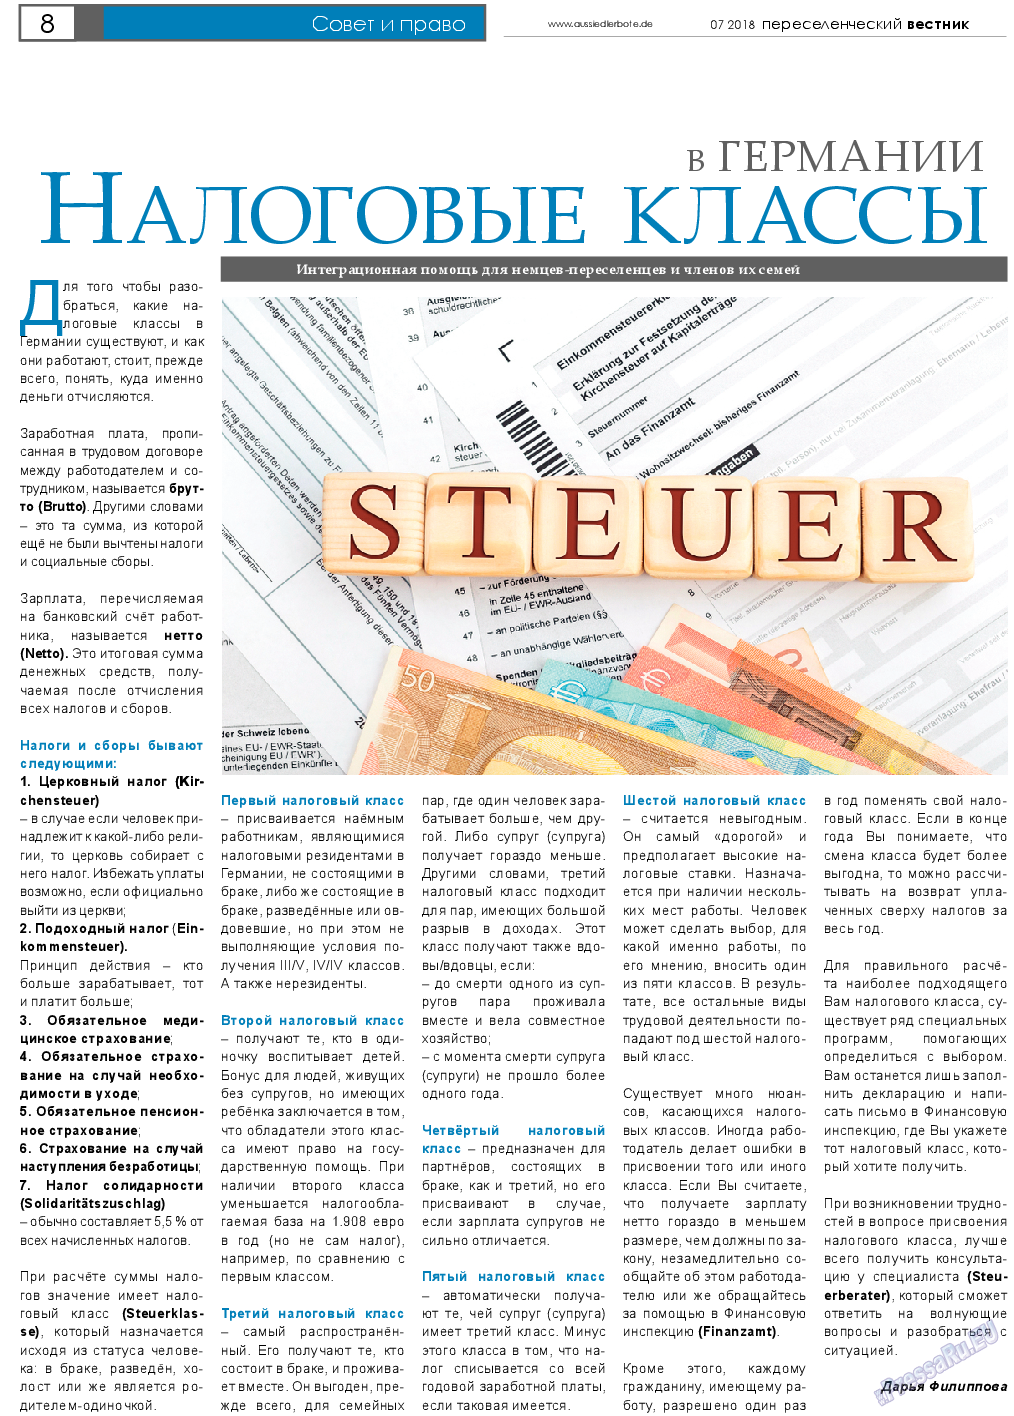 Переселенческий вестник, газета. 2018 №7 стр.8